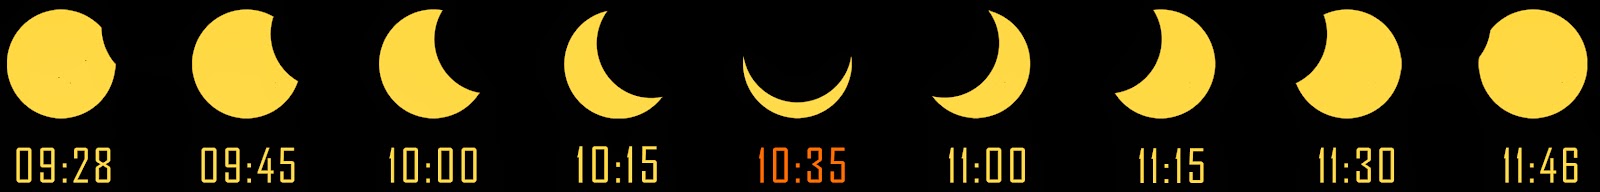 Eclipse partielle, 20 mars 2015, Belgique, Sonsverduistering, Solformørkelse, Έκλειψη Ηλίου, Eclissi solare, 日食l’hémisphère nord e, totale, Zonsverduistering, eclips, astronomie